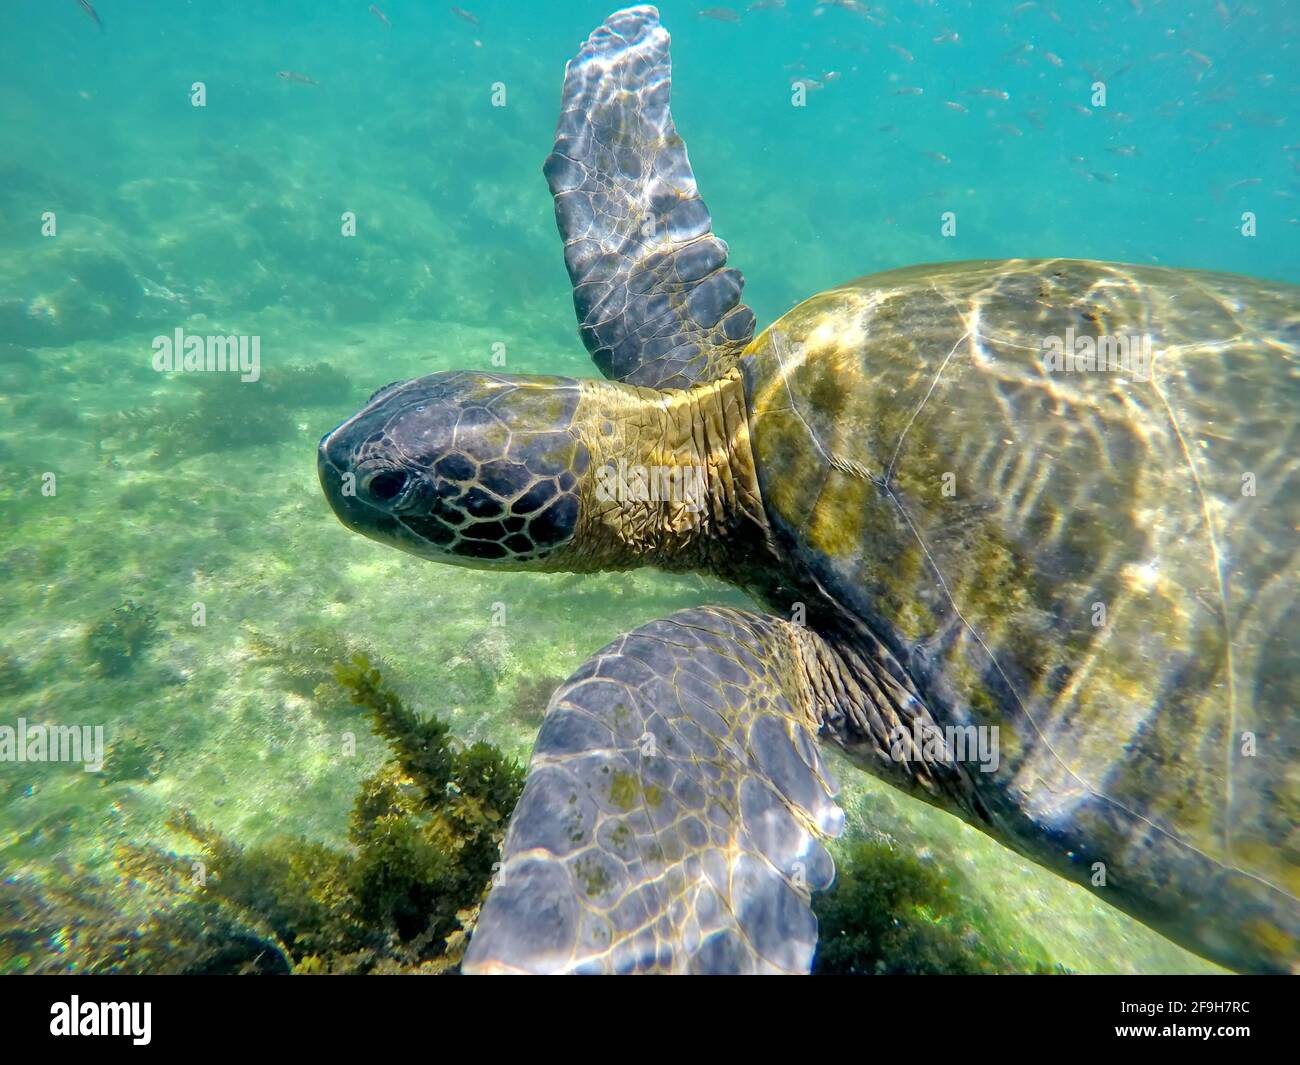 Close up of a Galapagos green sea turtle at Punta Espinoza, Fernandina Island, Galapagos, Ecuador Stock Photo